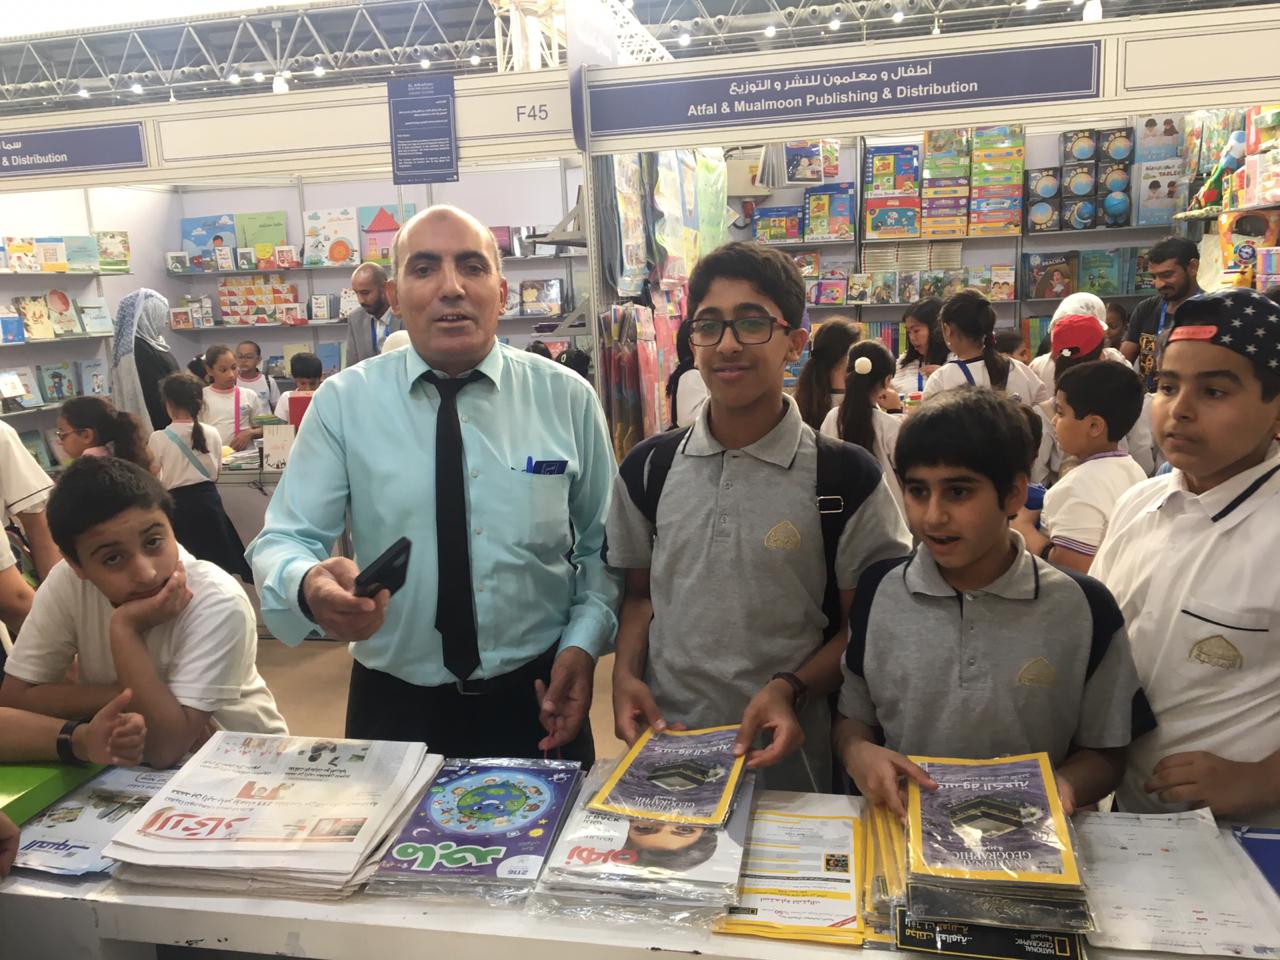 Al Ain Book Fair 2019